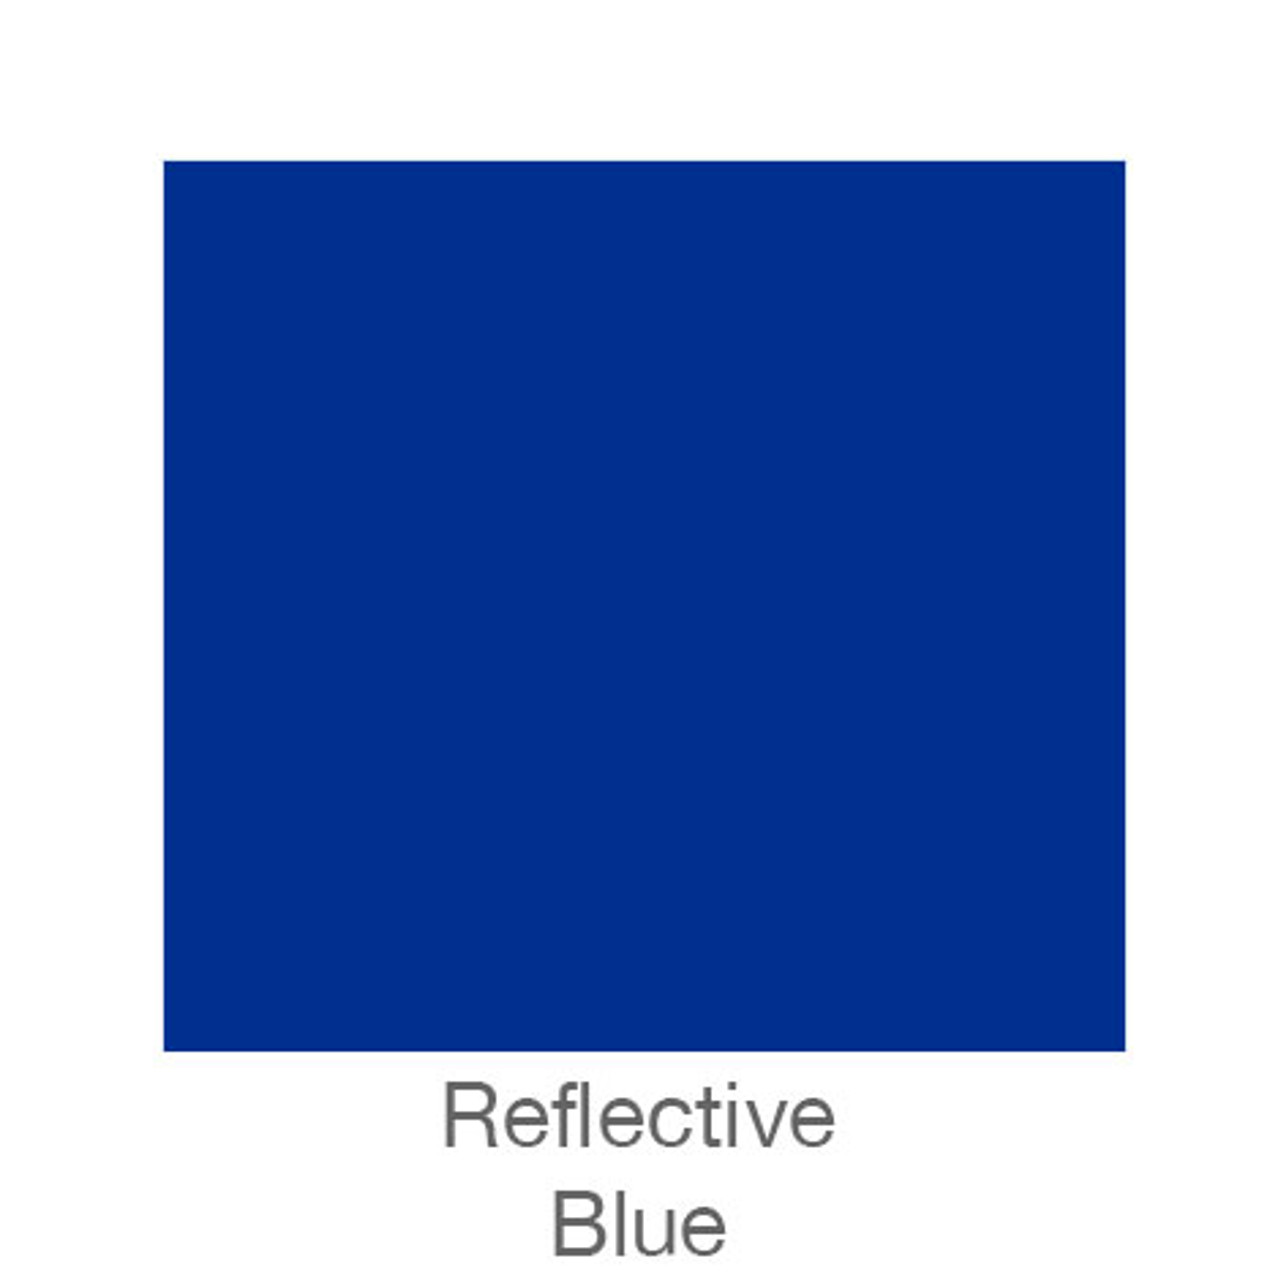 Blue - Reflective Vinyl - 12 x 24 